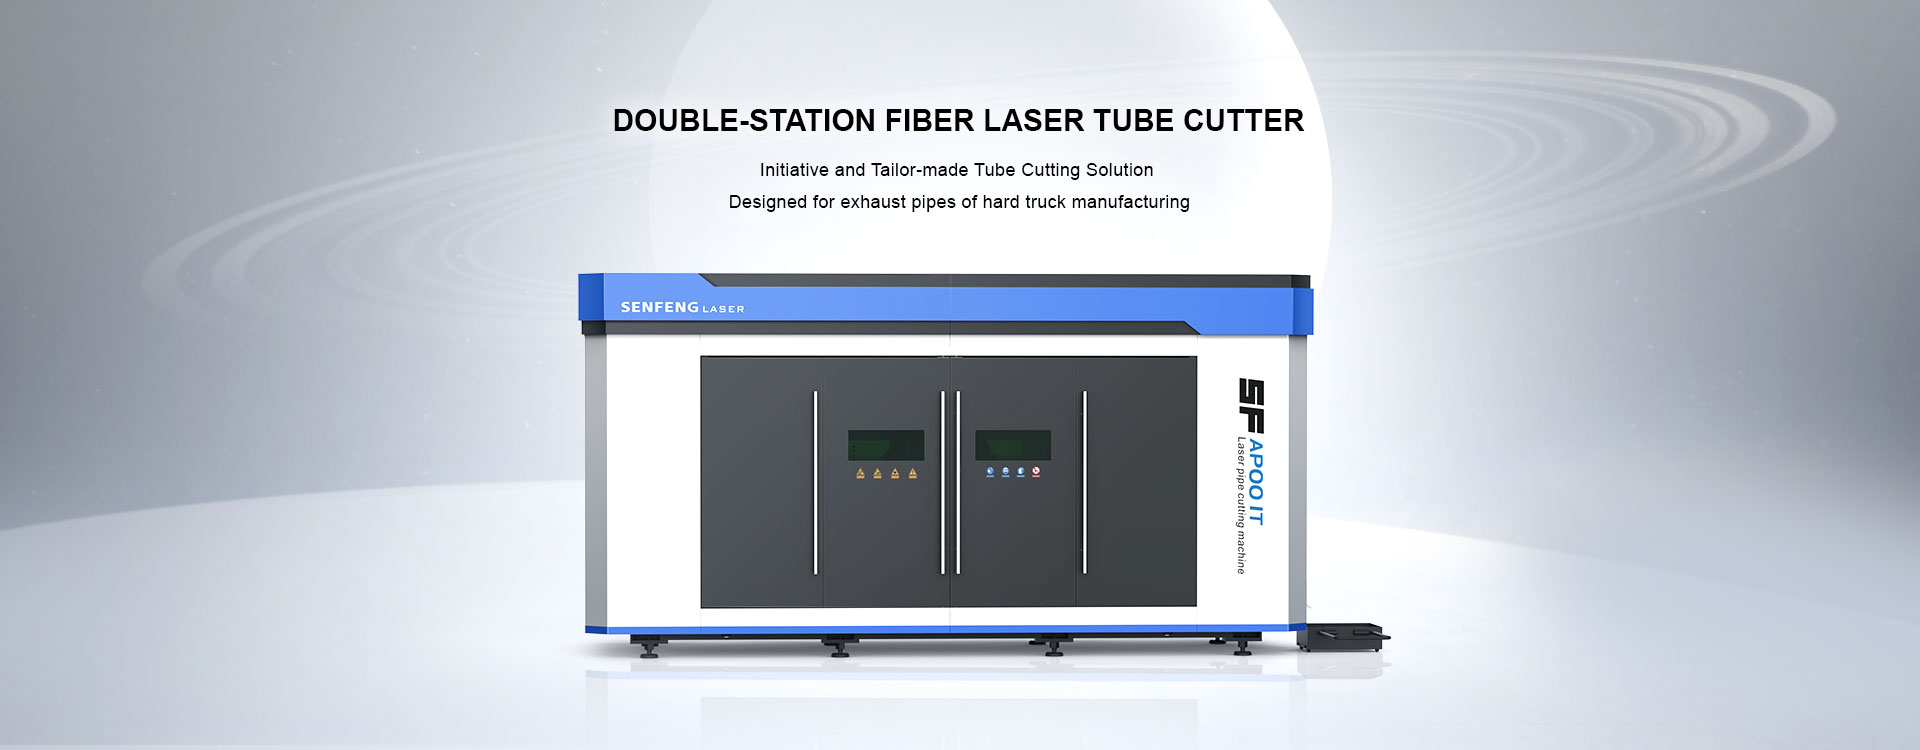 더블 스테이션 파이버 레이저 튜브 커터